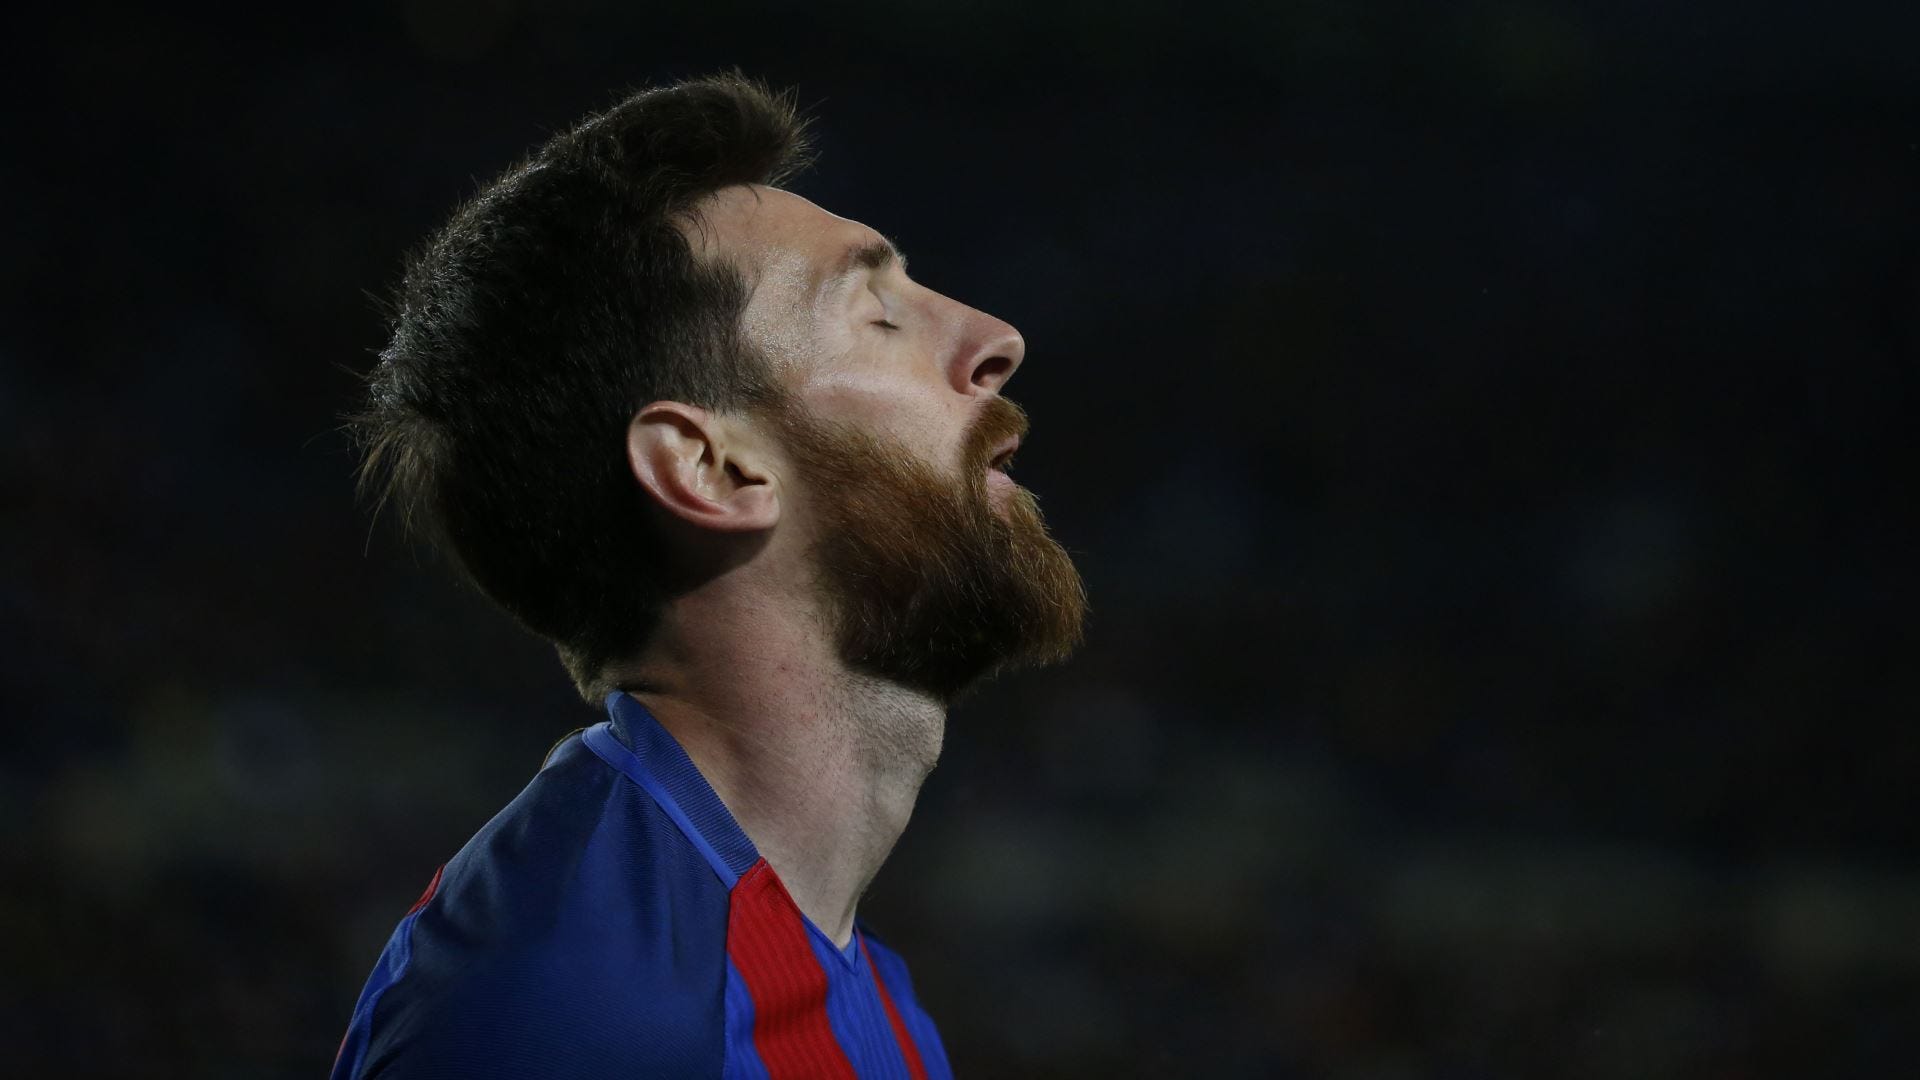 Hãy khám phá hình ảnh Messi kỉ lục buồn, với cảm xúc và nước mắt trong mắt anh, khi anh tiếp tục đẩy cận kề đến giới hạn của những gì mà có thể đạt được.